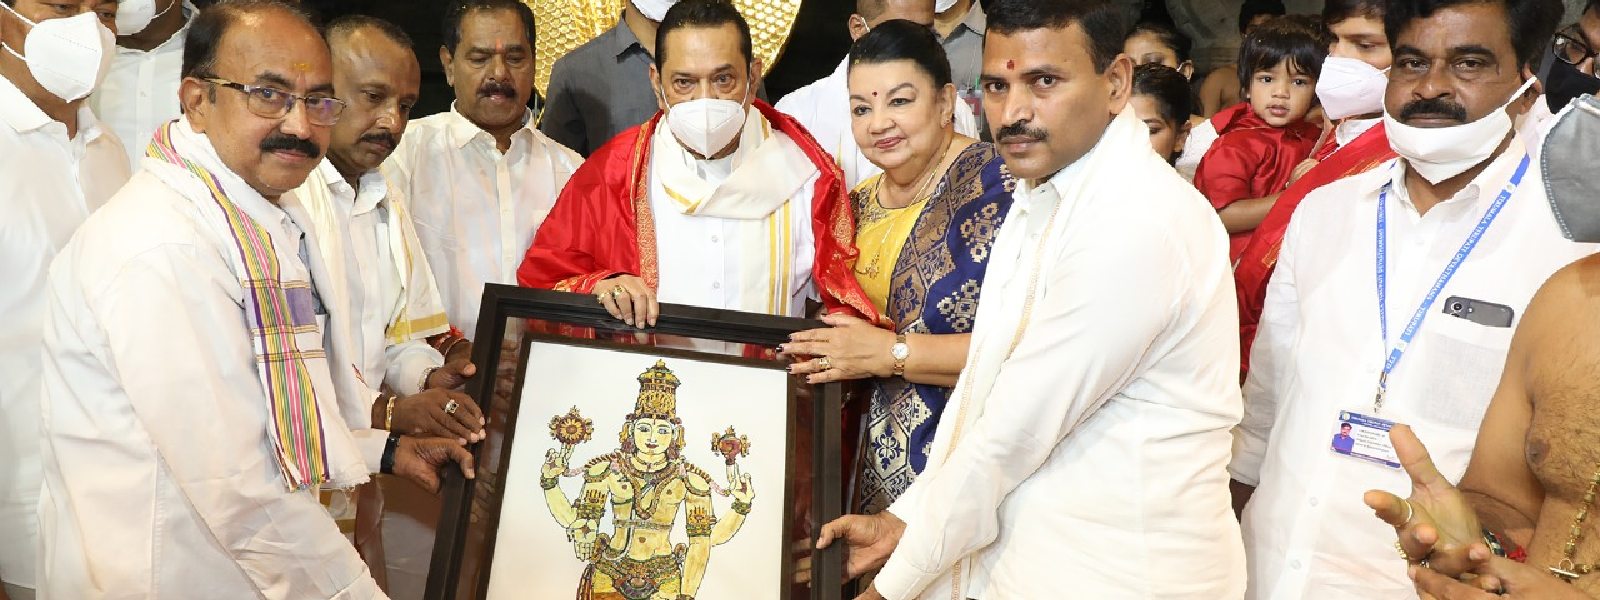 PM Rajapaksa Worships at Lord Venkateswara Temple